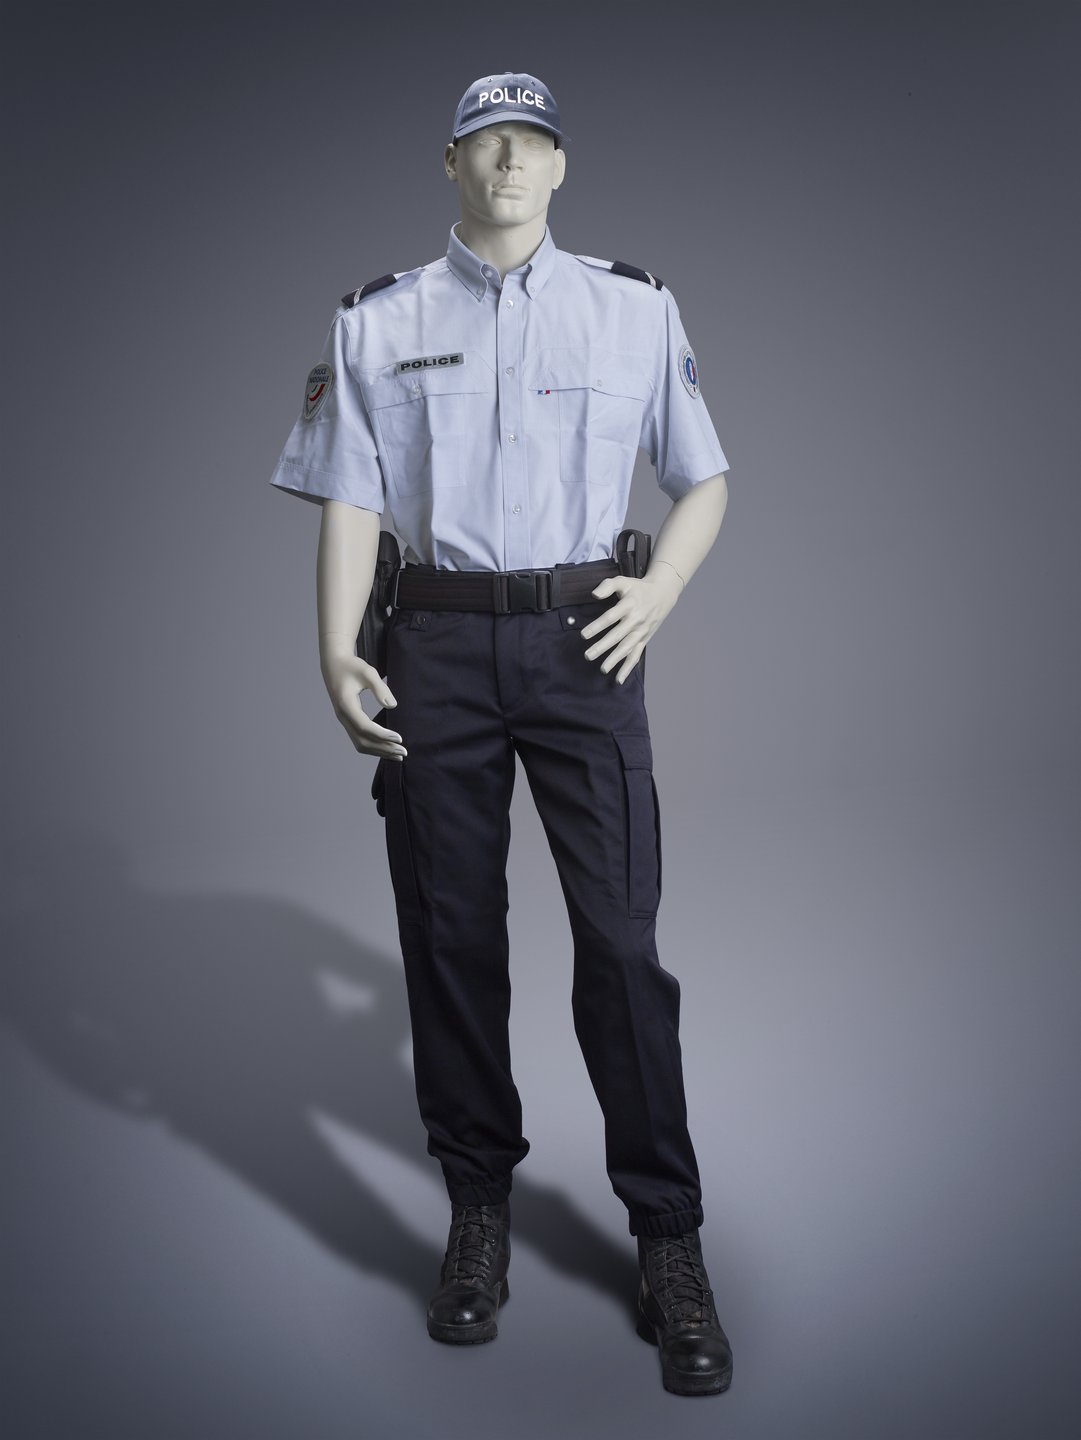 LAW ENFORCEMENT UNIFORMS - La compagnie du costume1081 x 1440